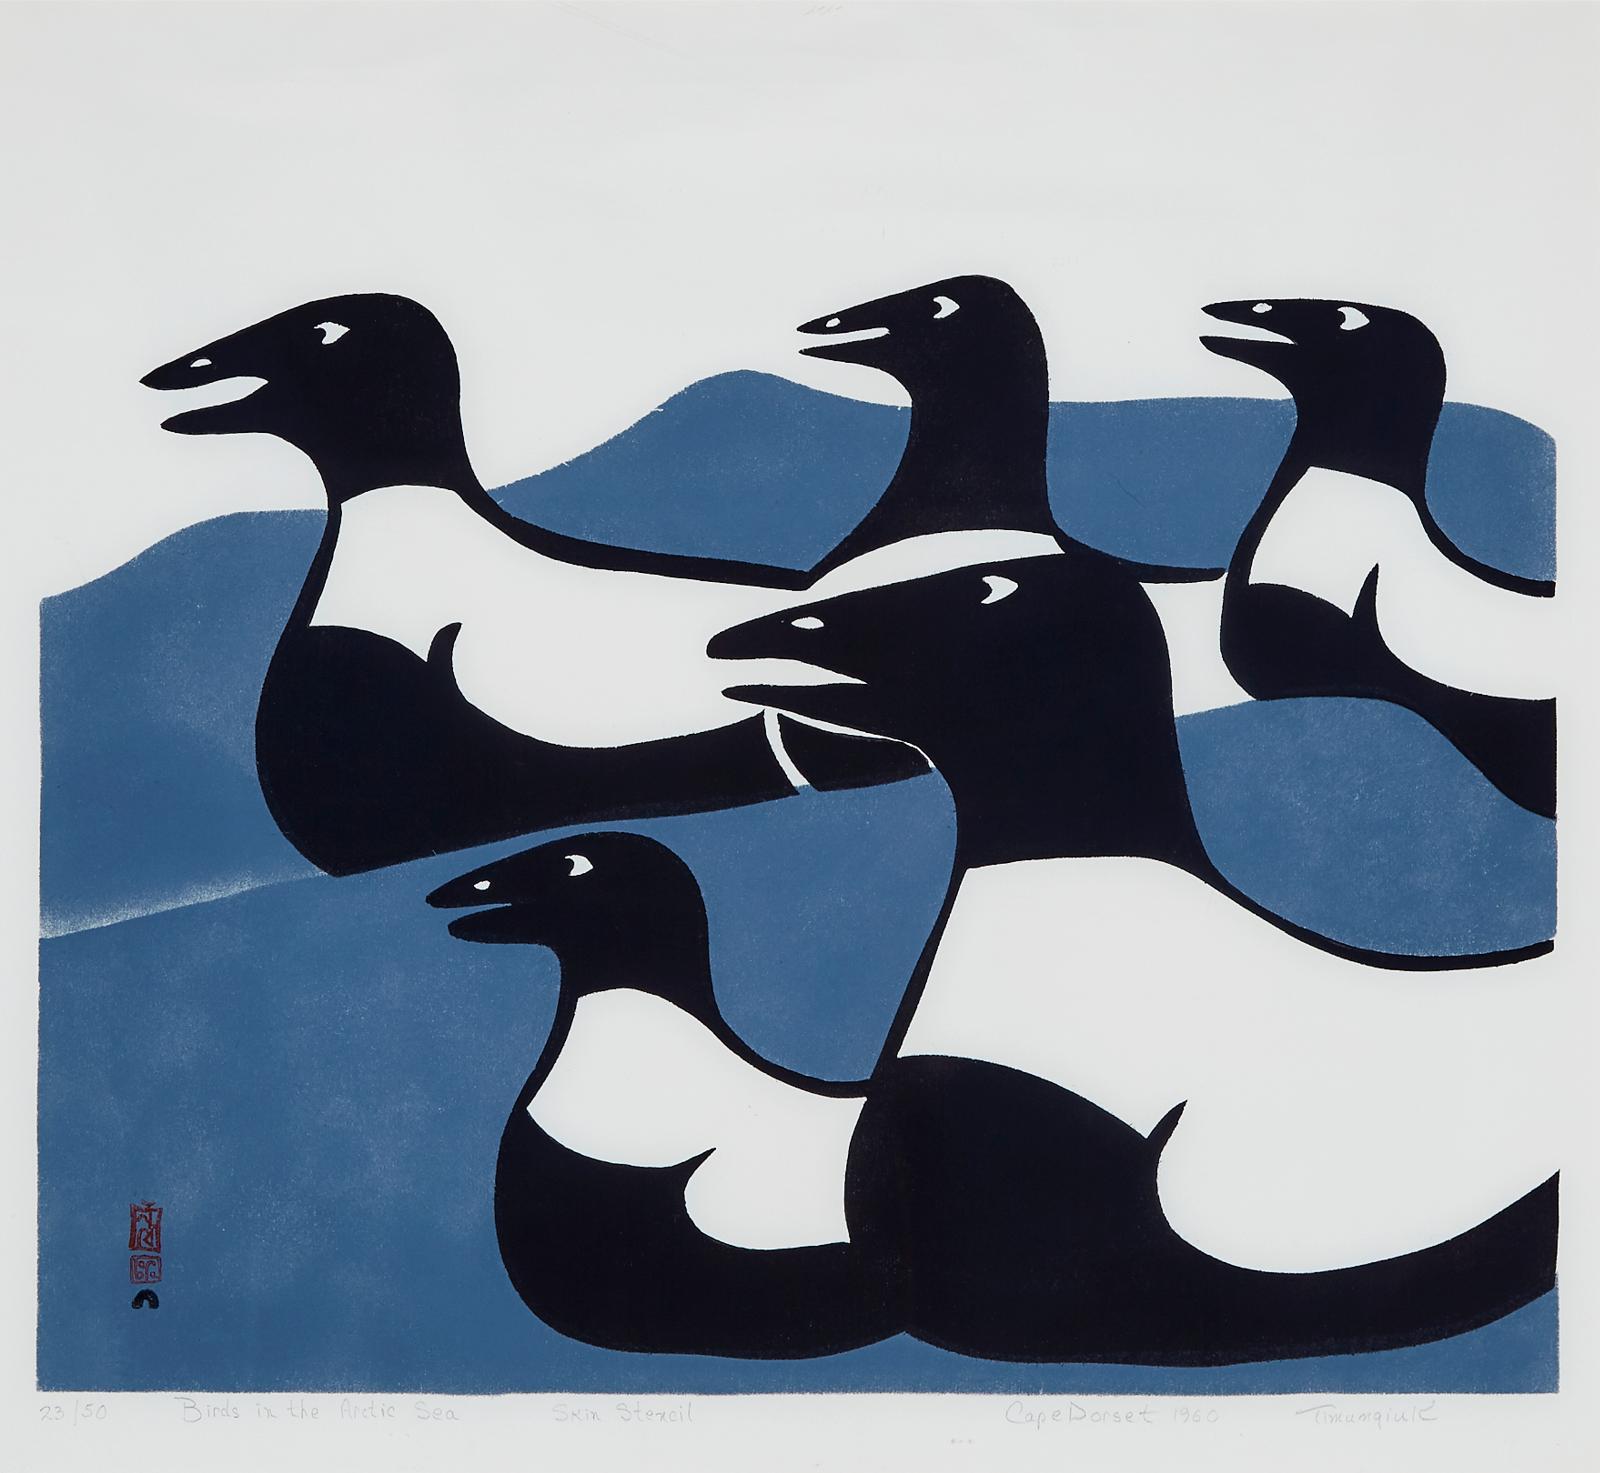 Timangiak Petaulassie (1940) - Birds In The Arctic Sea